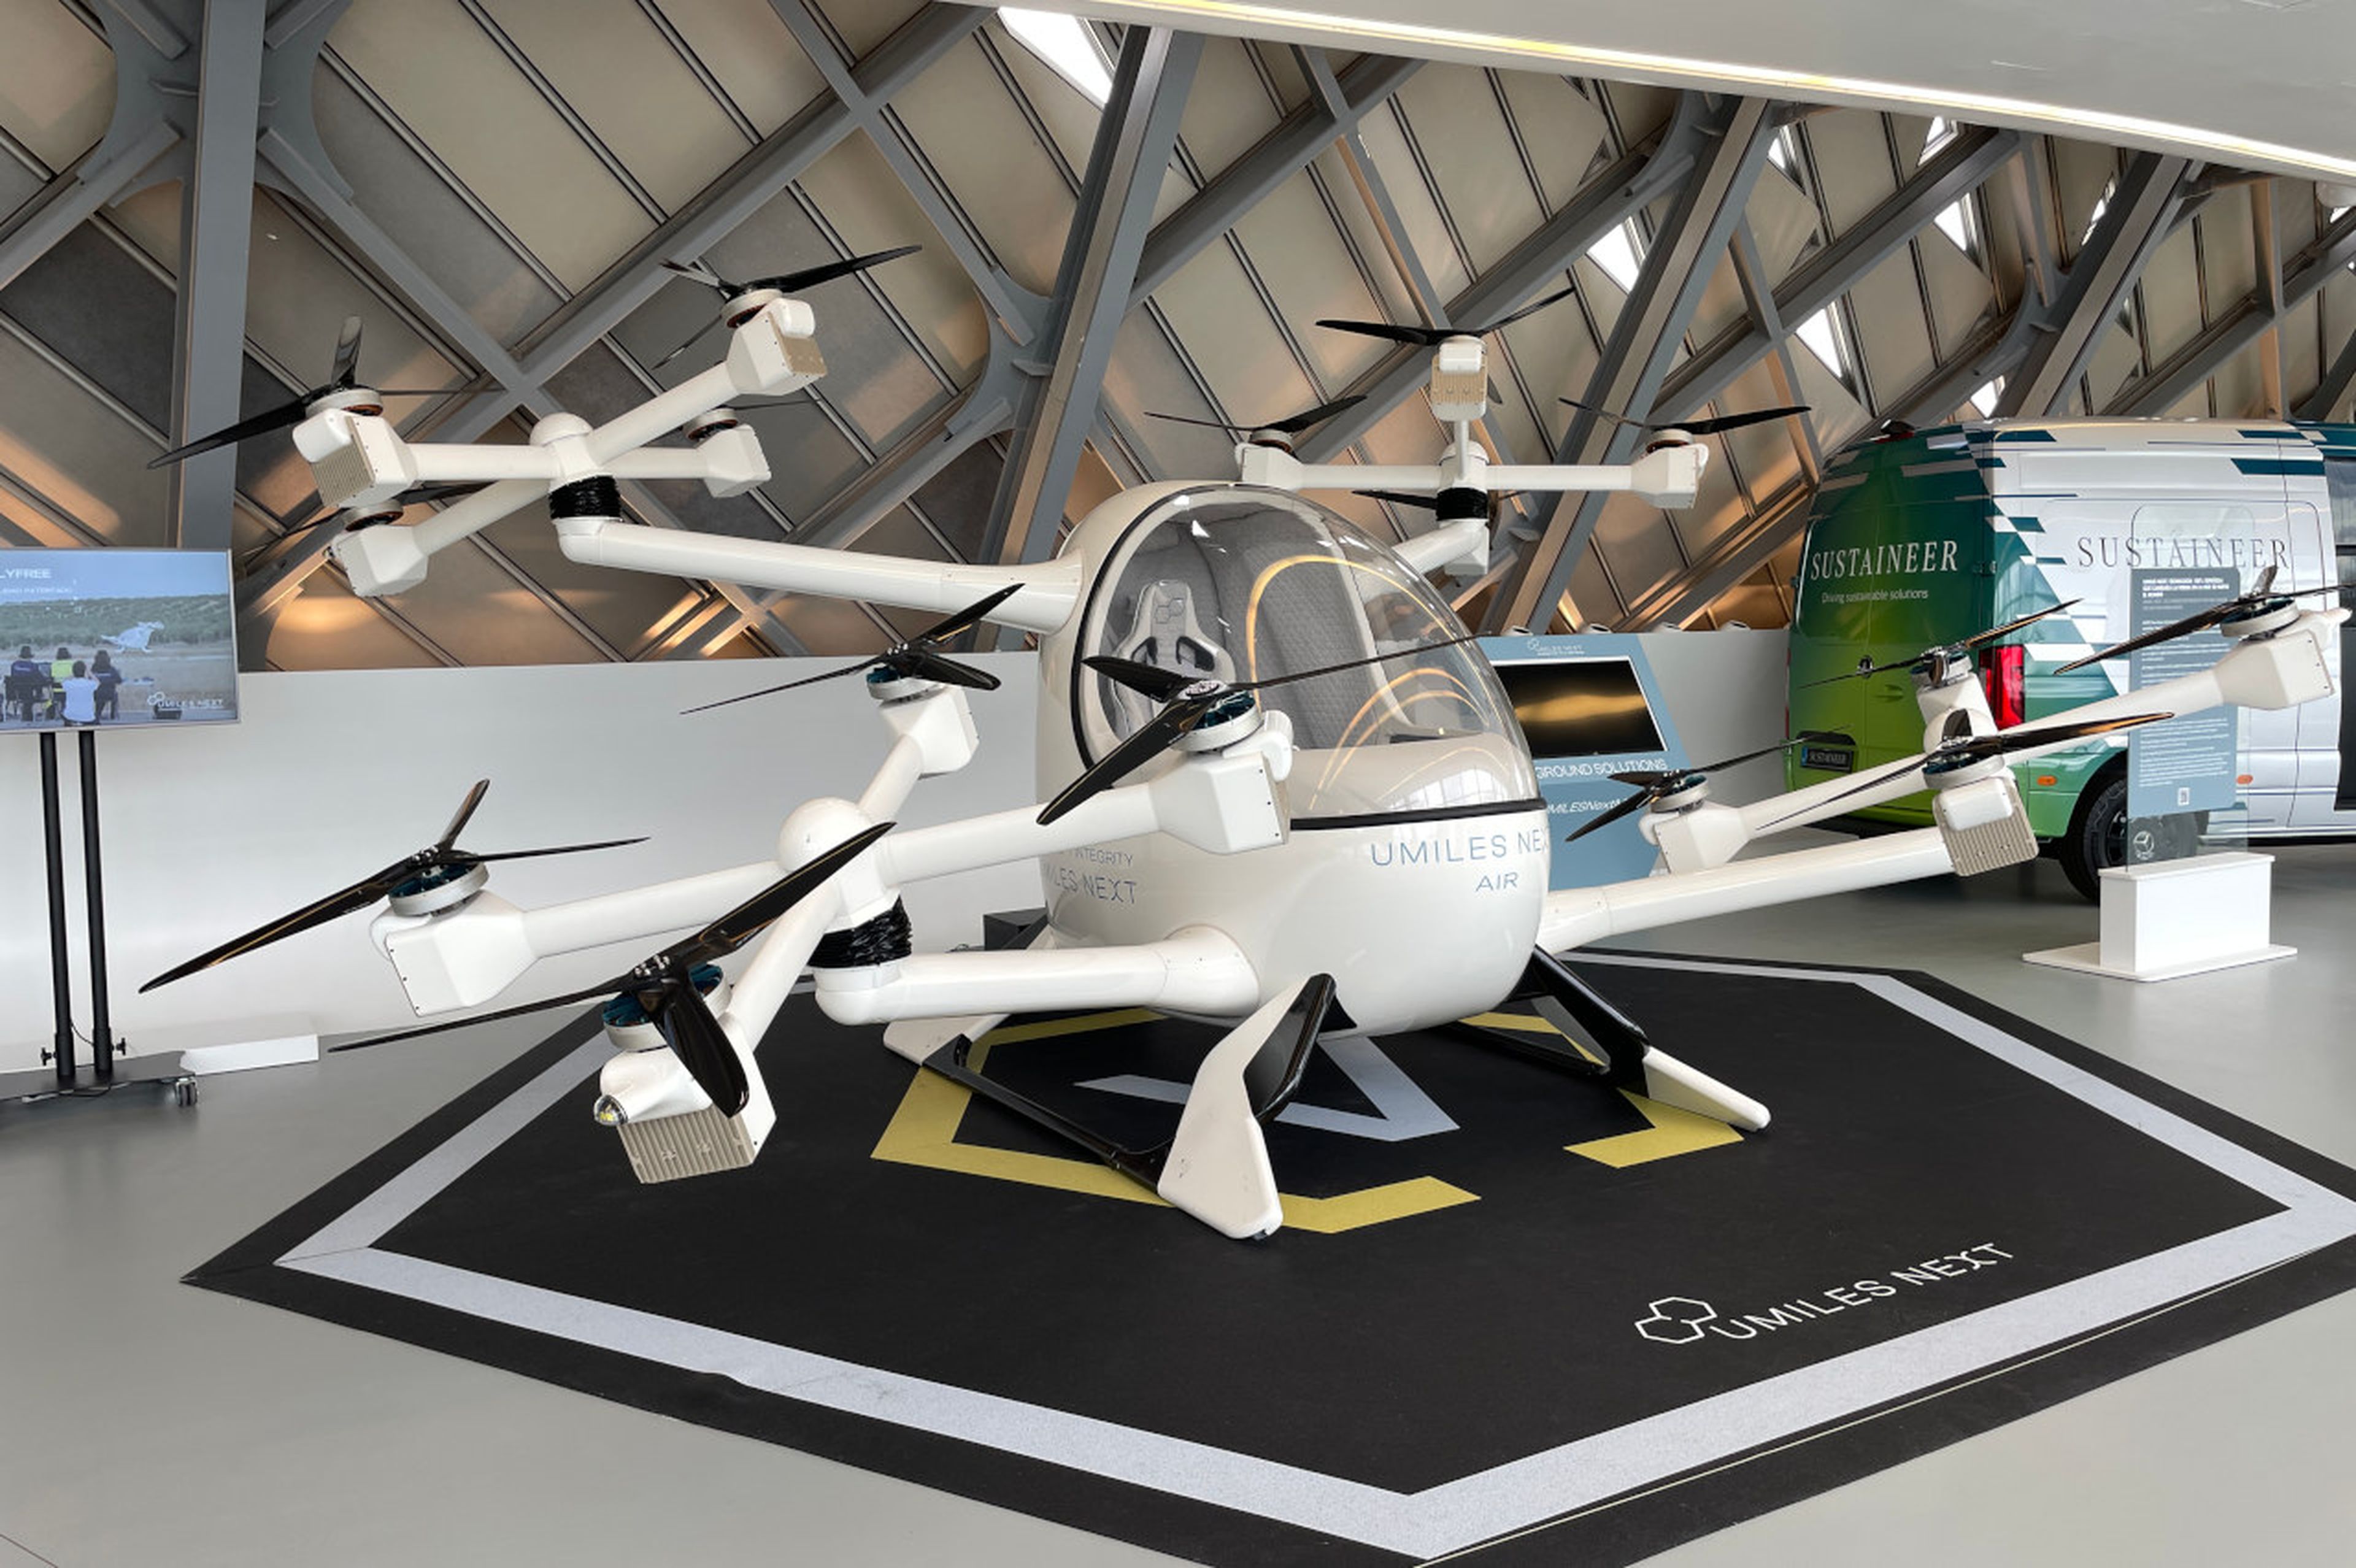 Umiles Next, un dron para el transporte de personas y mercancías, expuesto en Mobility City